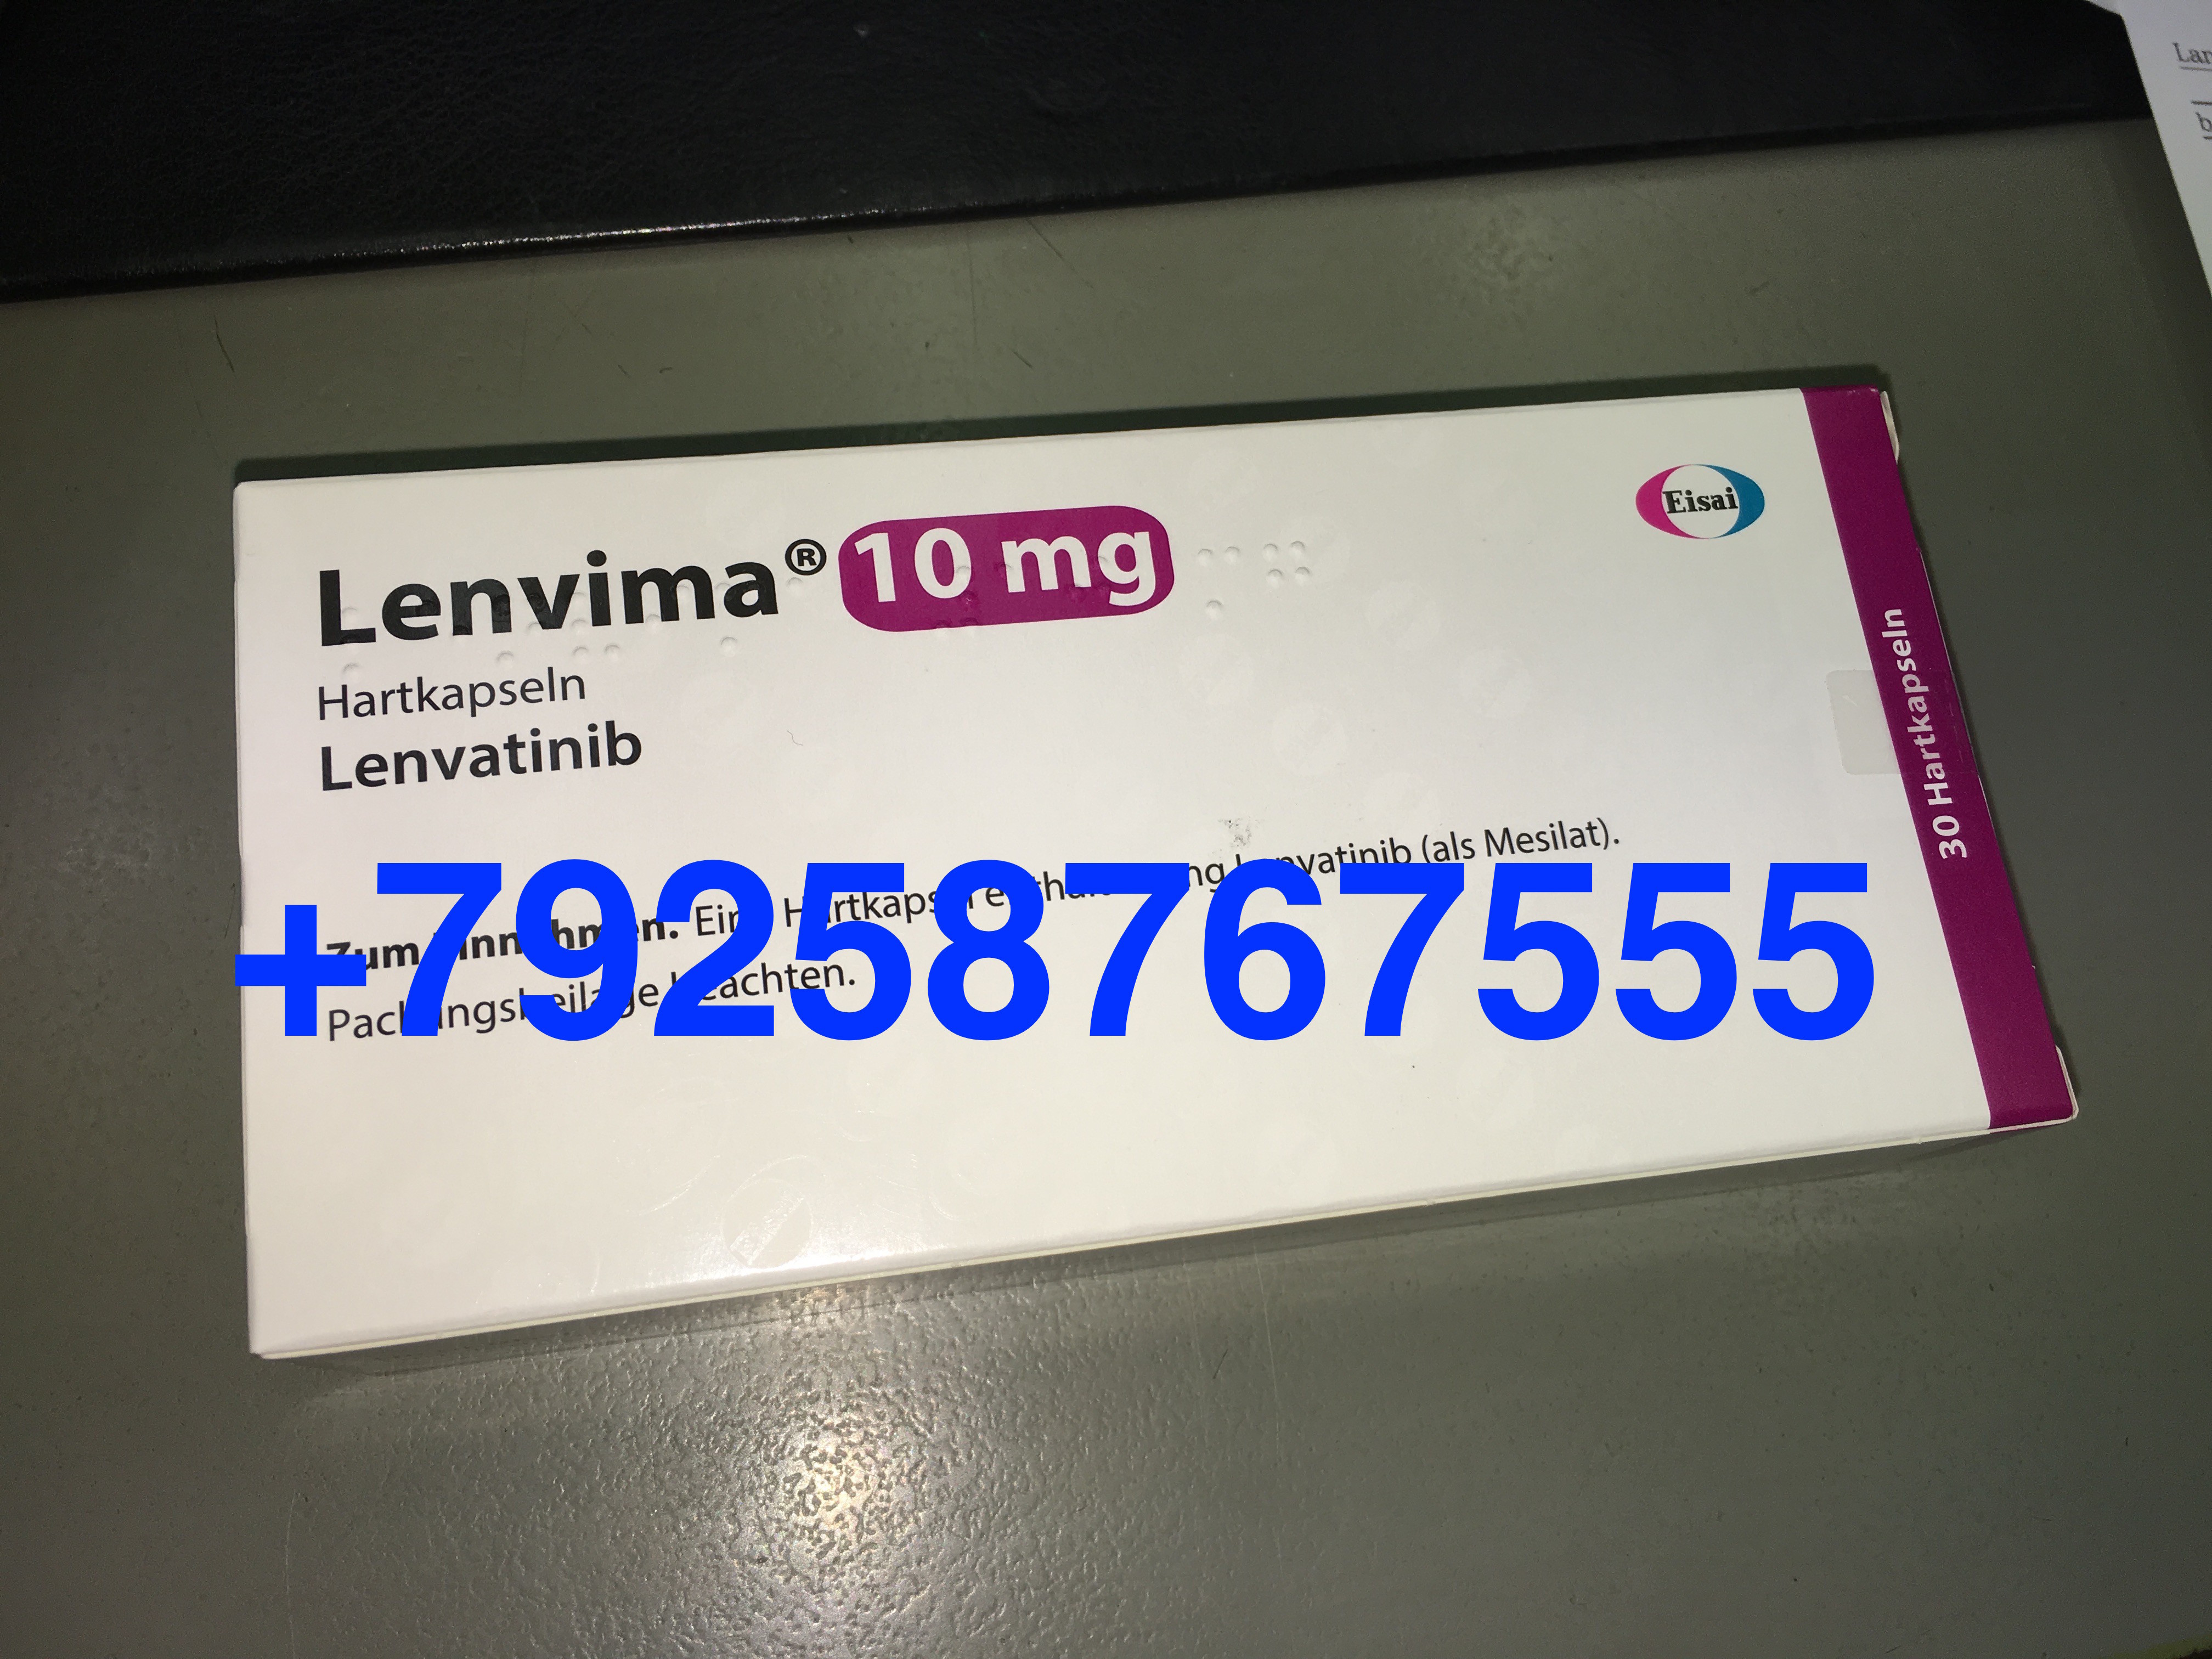 Ленвима 10 мг (Ленватиниб) цена,  , инструкция